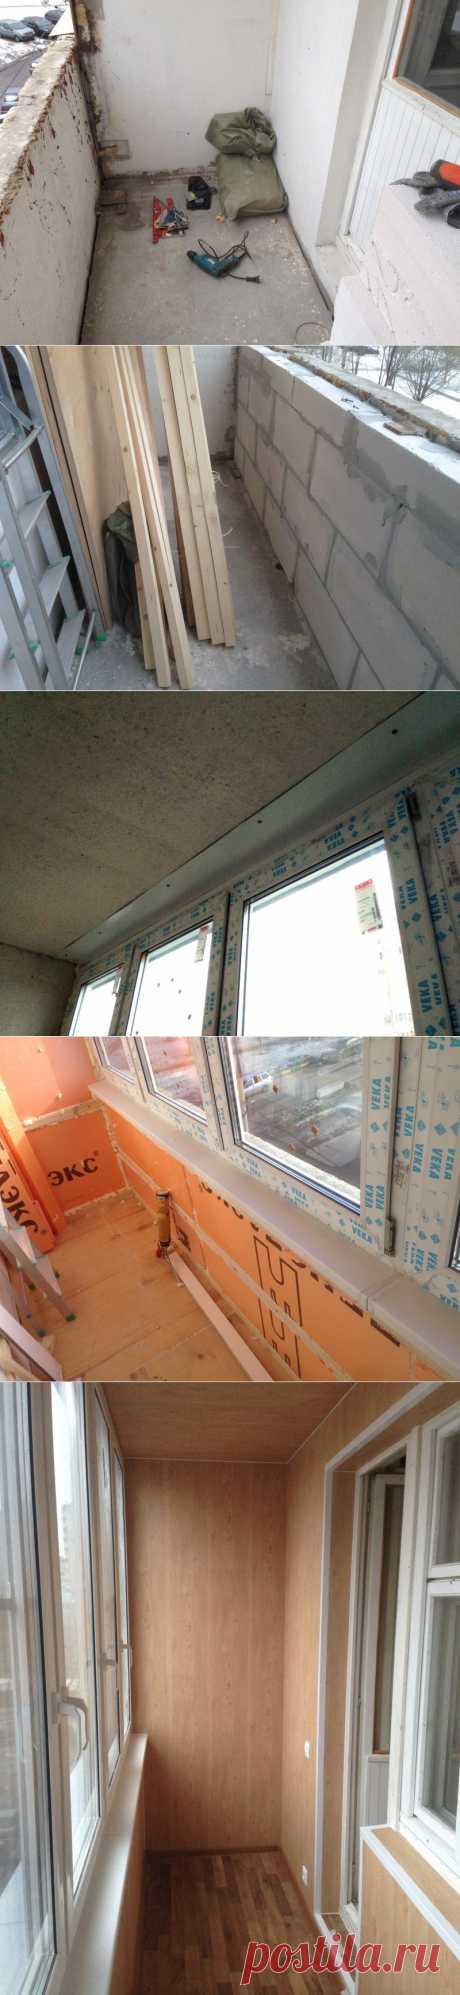 Подробная история «перерождения» балкона — Наши дома